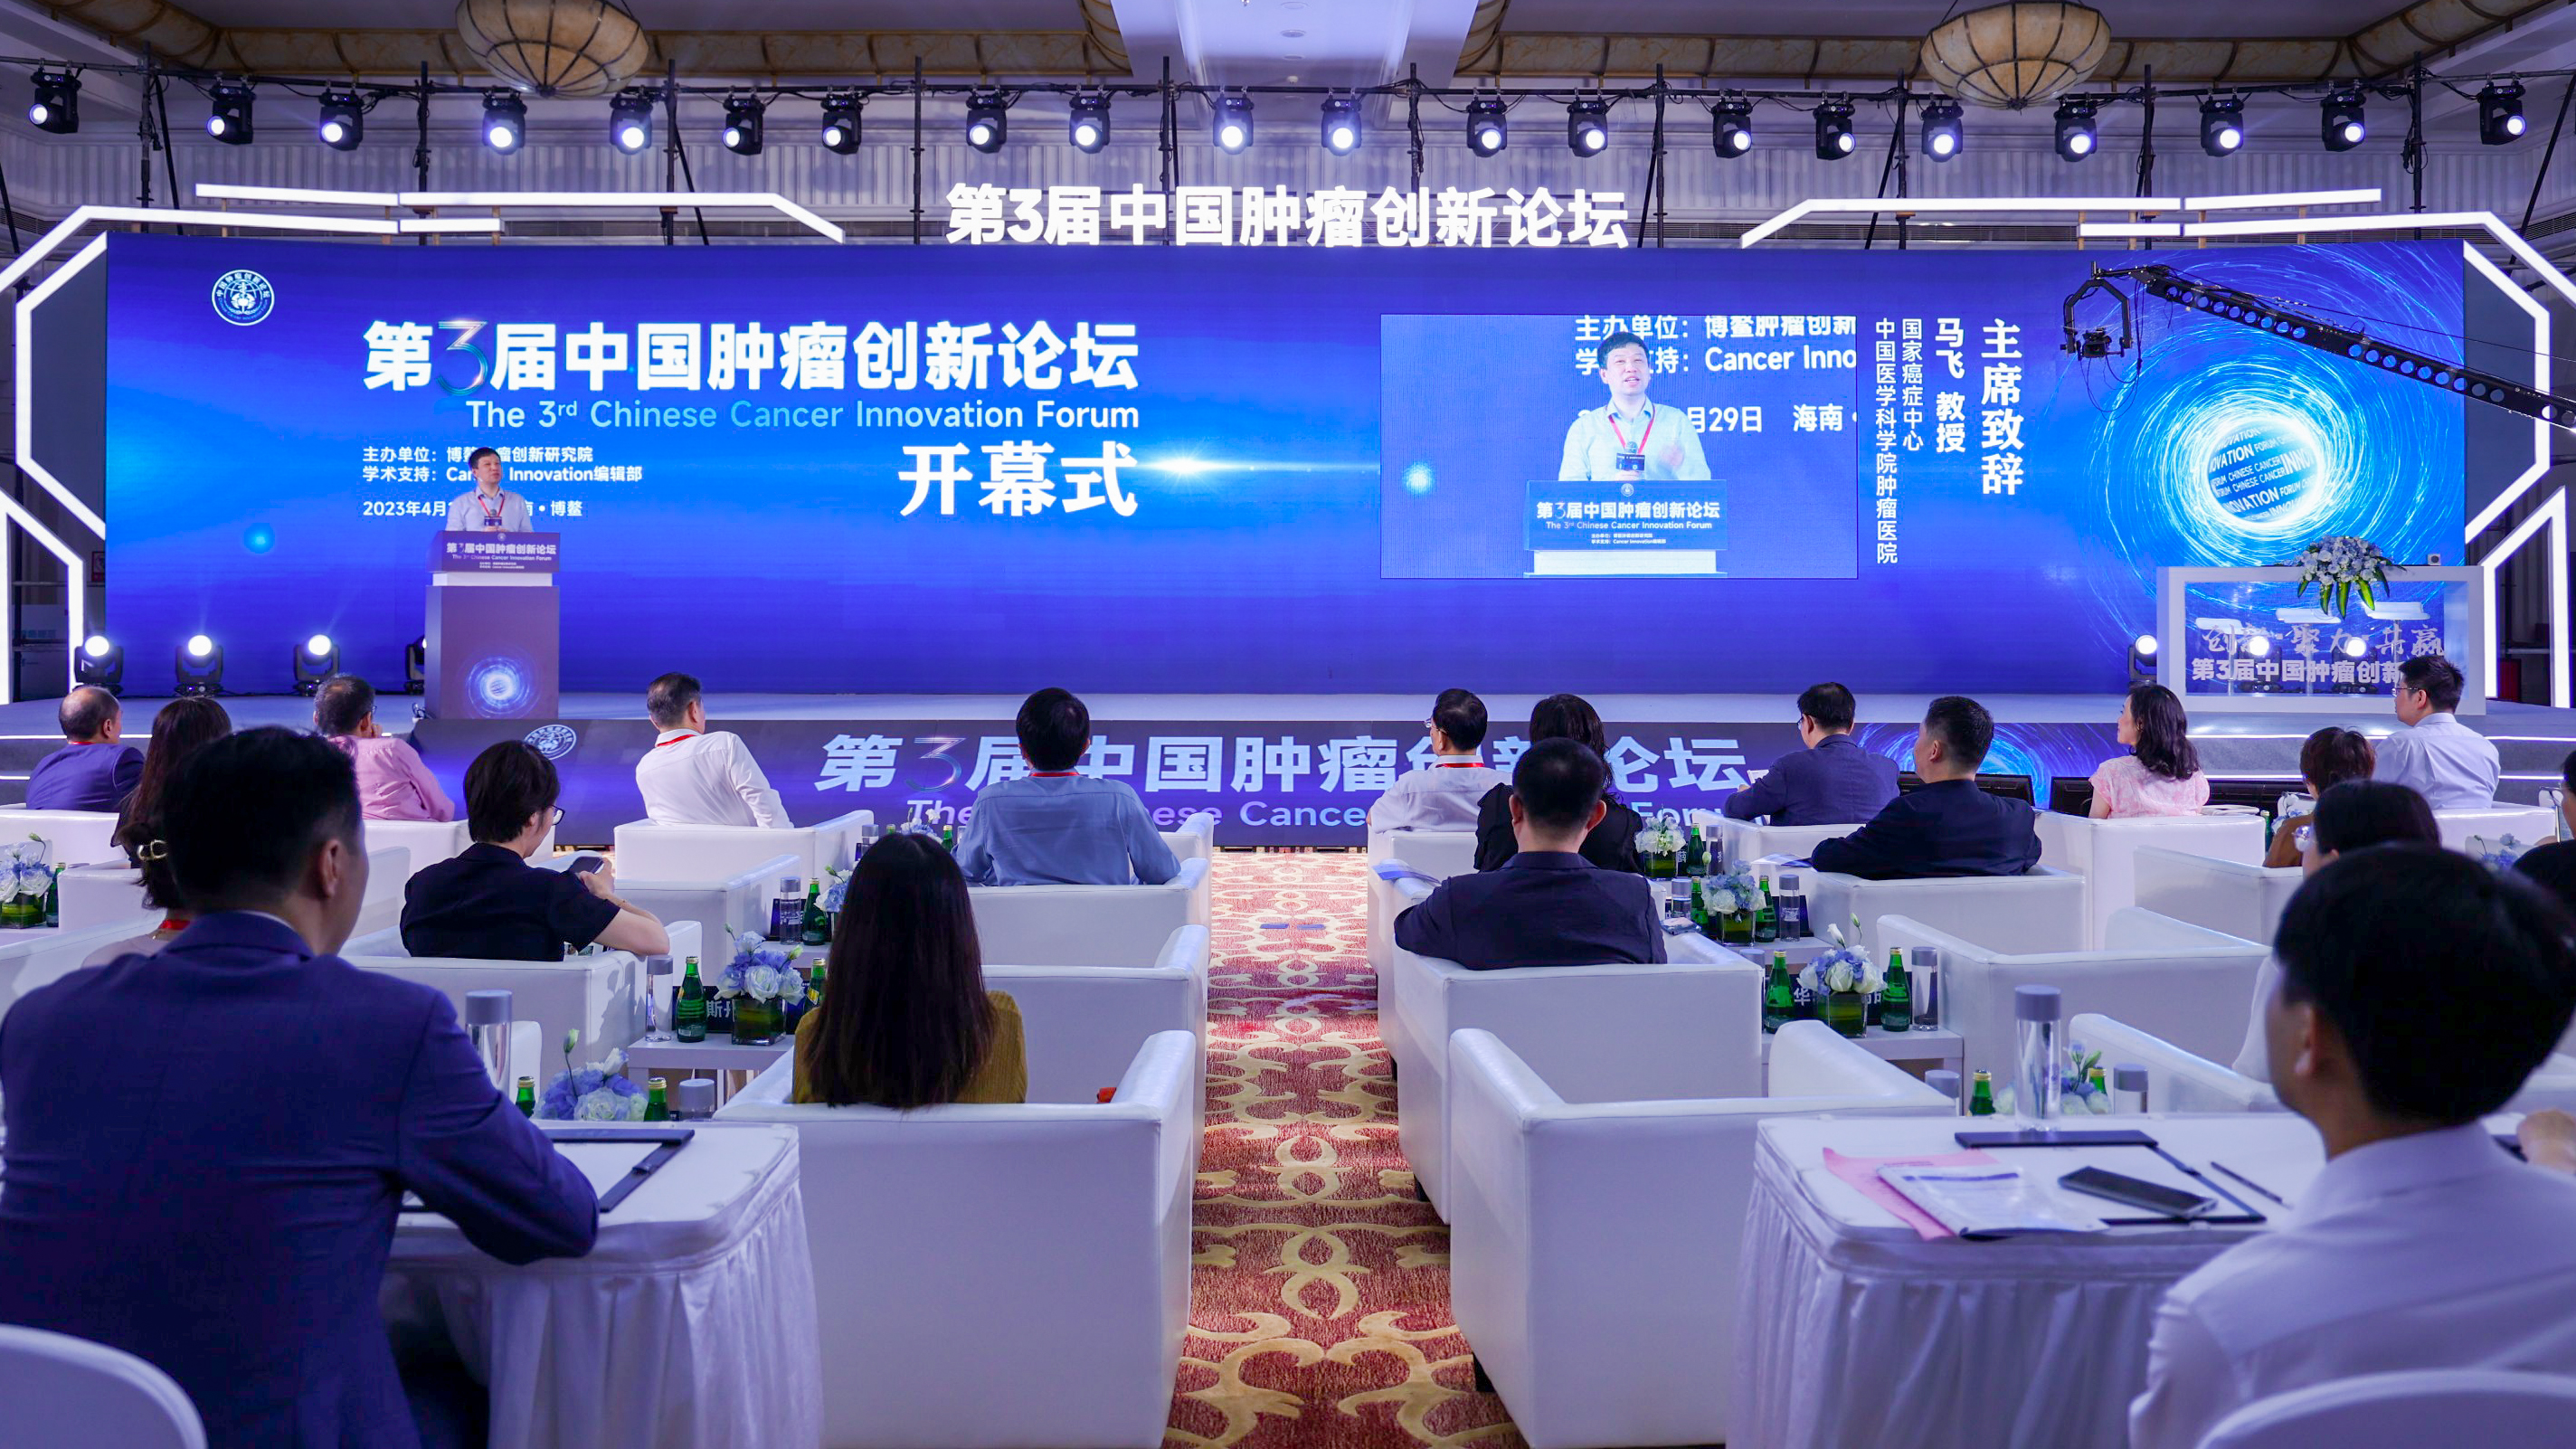 創新?聚力?共贏丨第3屆中國腫瘤創新論壇在博鰲盛大召開